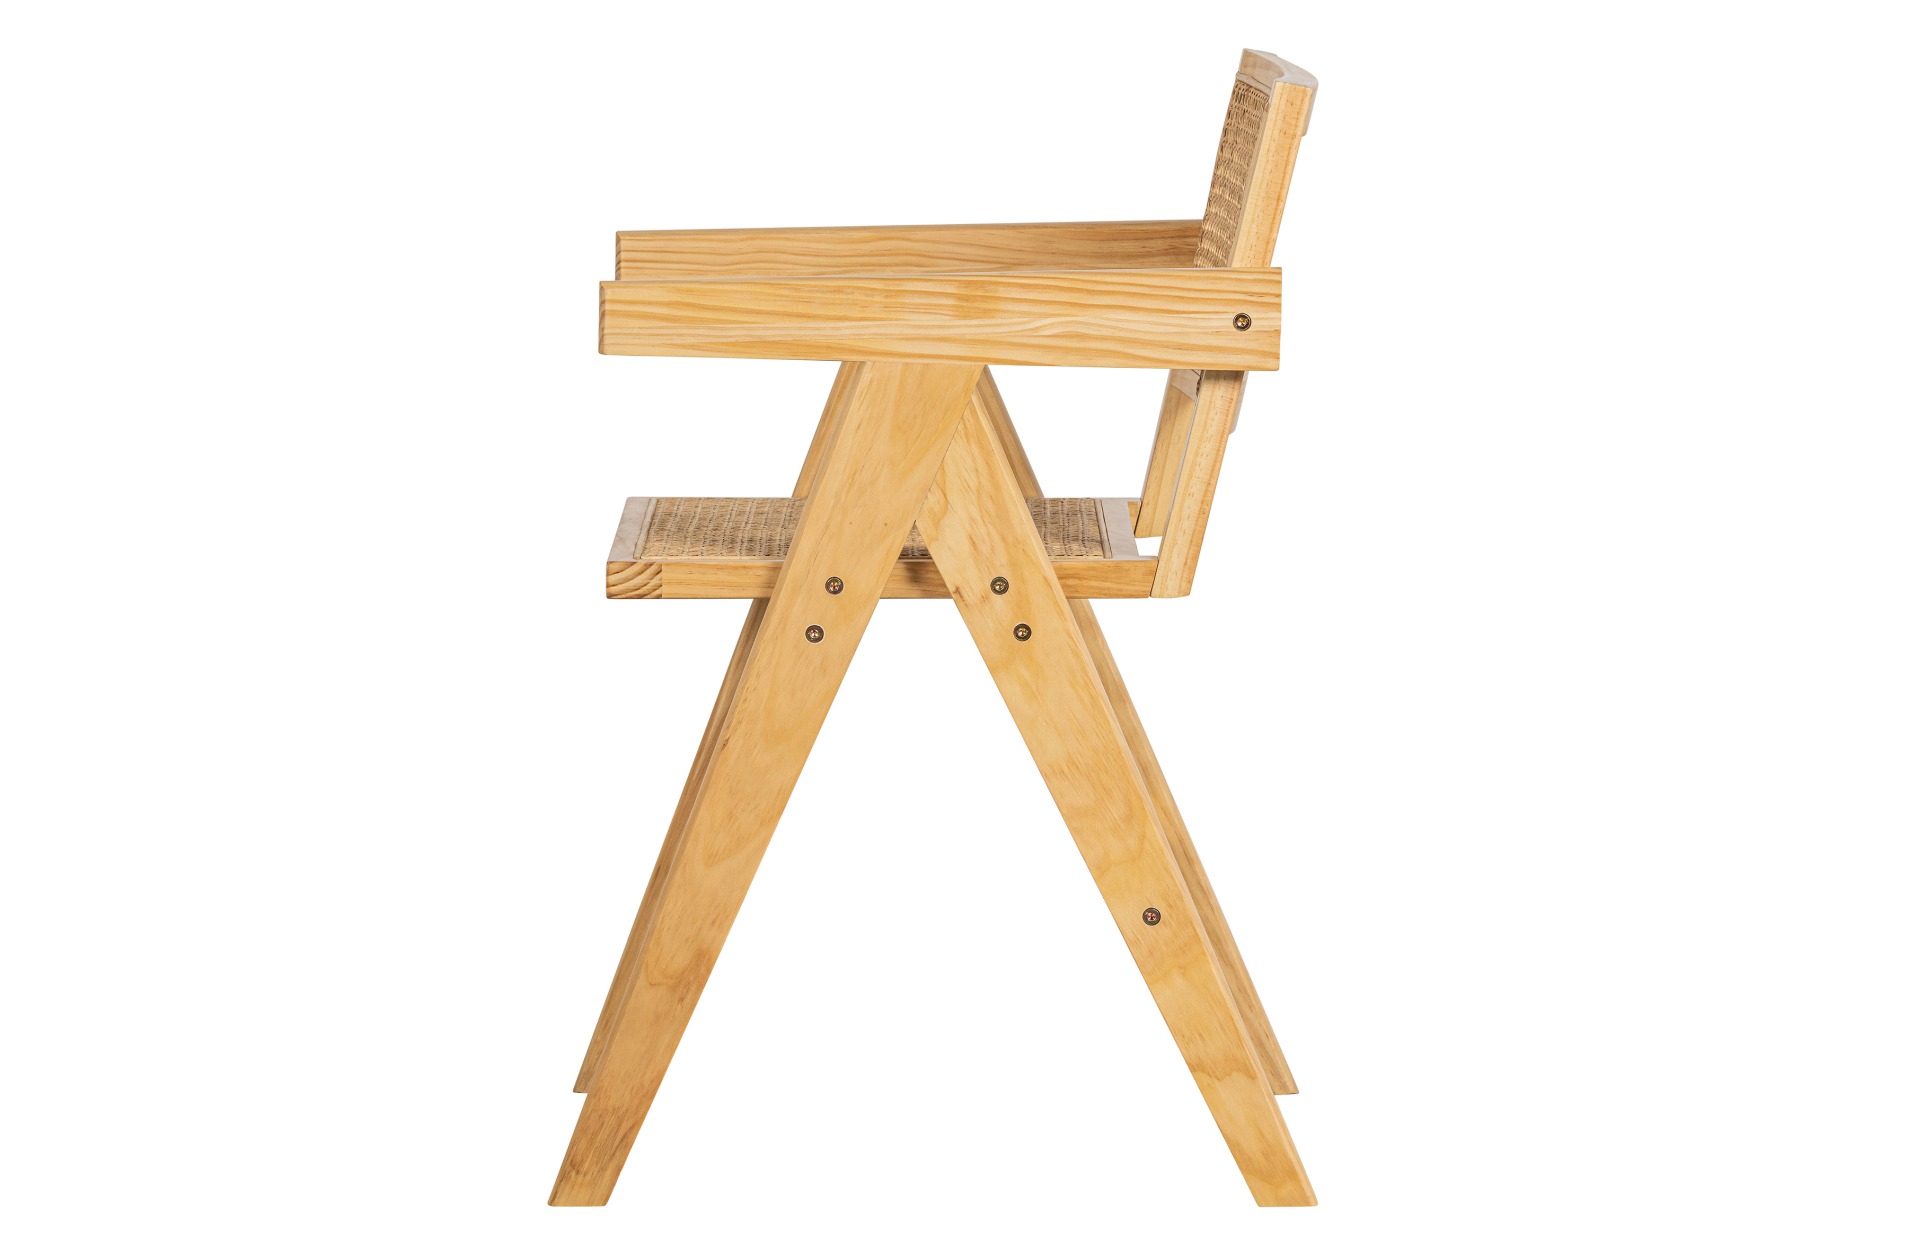 Der Esszimmerstuhl Gunn besitzt ein Skandinavisches Design. Gefertigt wurde der Stuhl aus Rattan und Kiefernholz, welches eine natürliche Farbe besitzt.